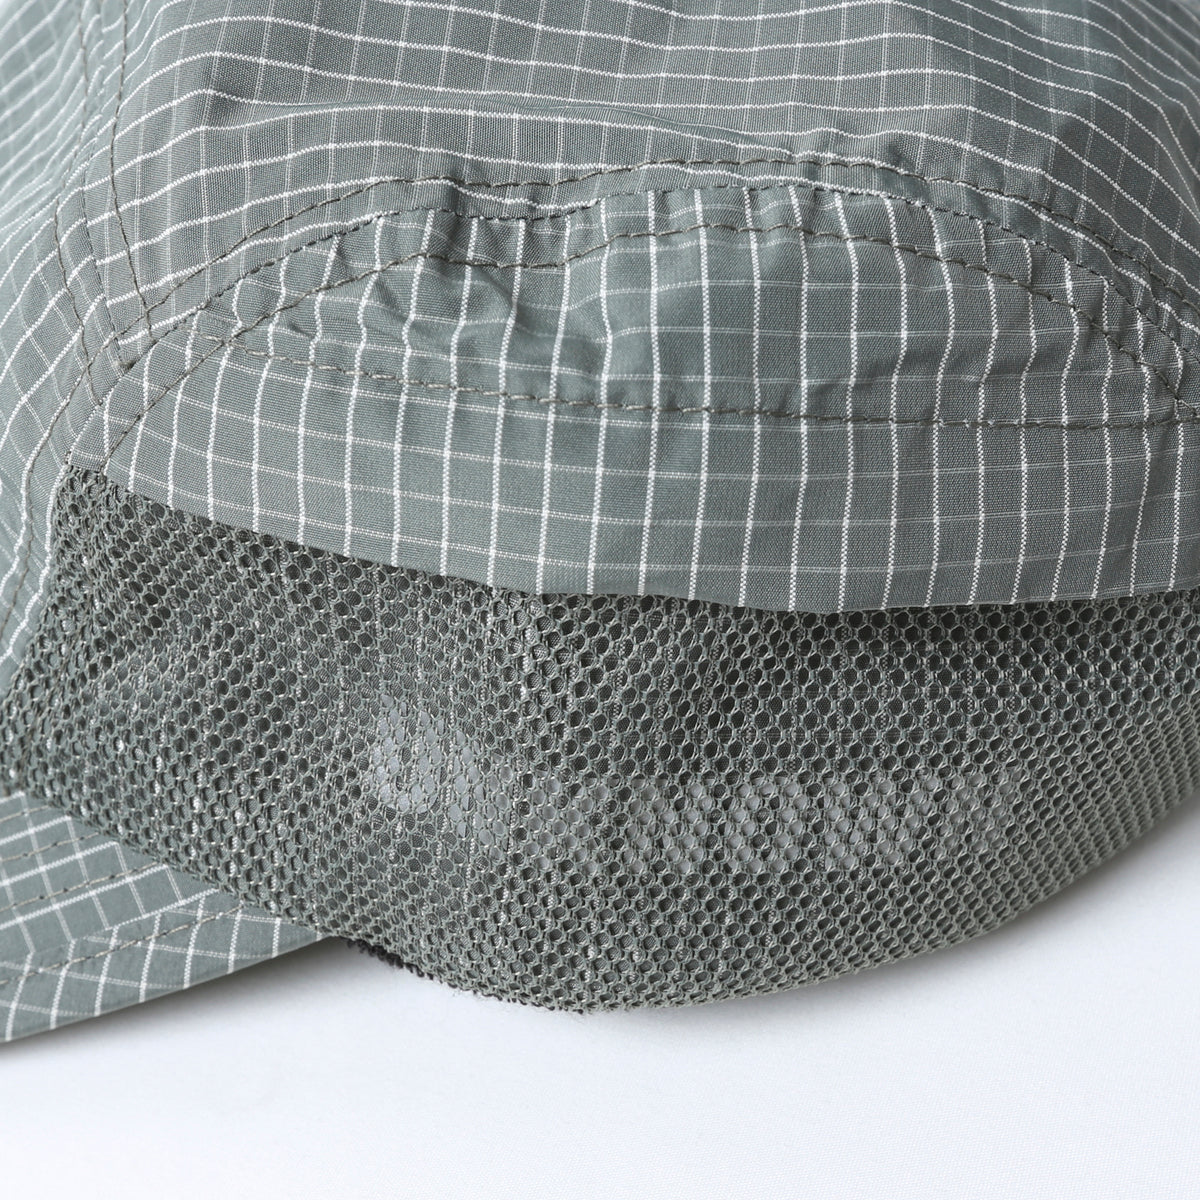 GRID CLOTH CAP